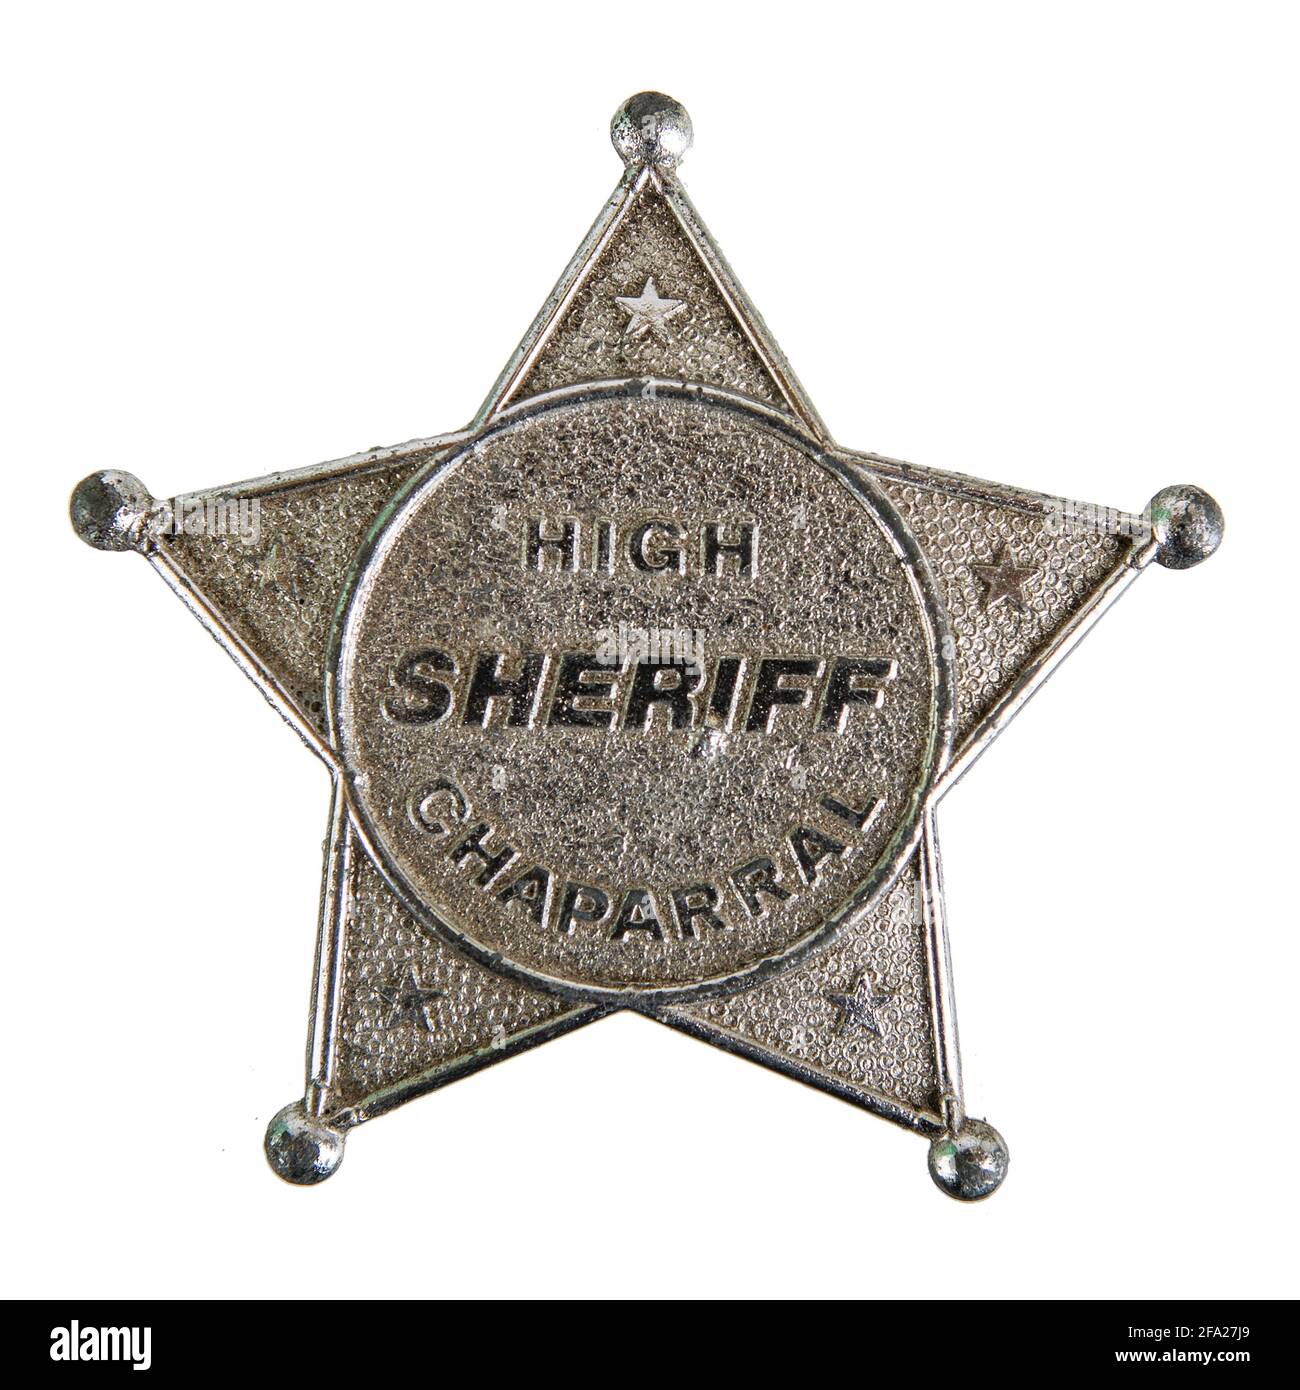 Ein Sheriffstern mit 5 Zacken, abgerundeten Spitzen und der Aufschrift High Chaparral Sheriff aus silbernem aluminium. Freigestellt Banque D'Images